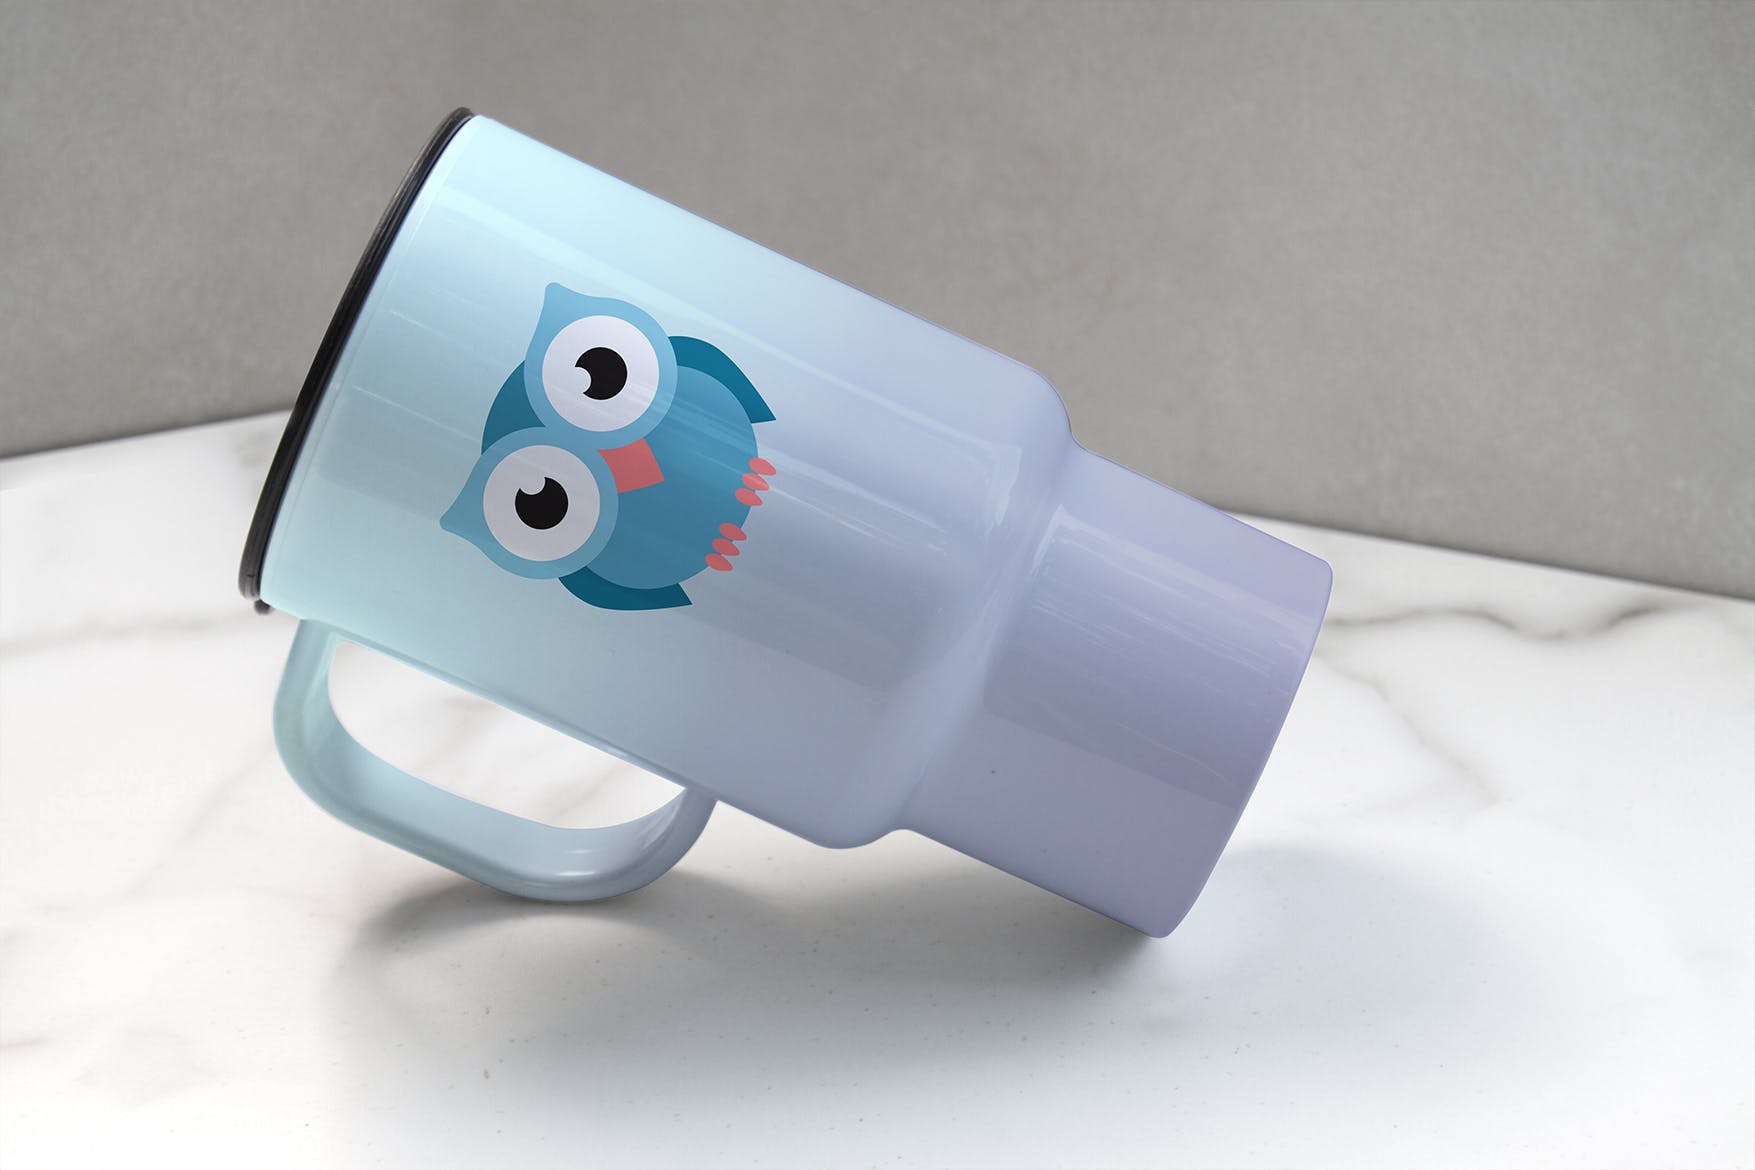 便携式杯子图案设计预览素材中国精选 Portable Cup Mockup插图